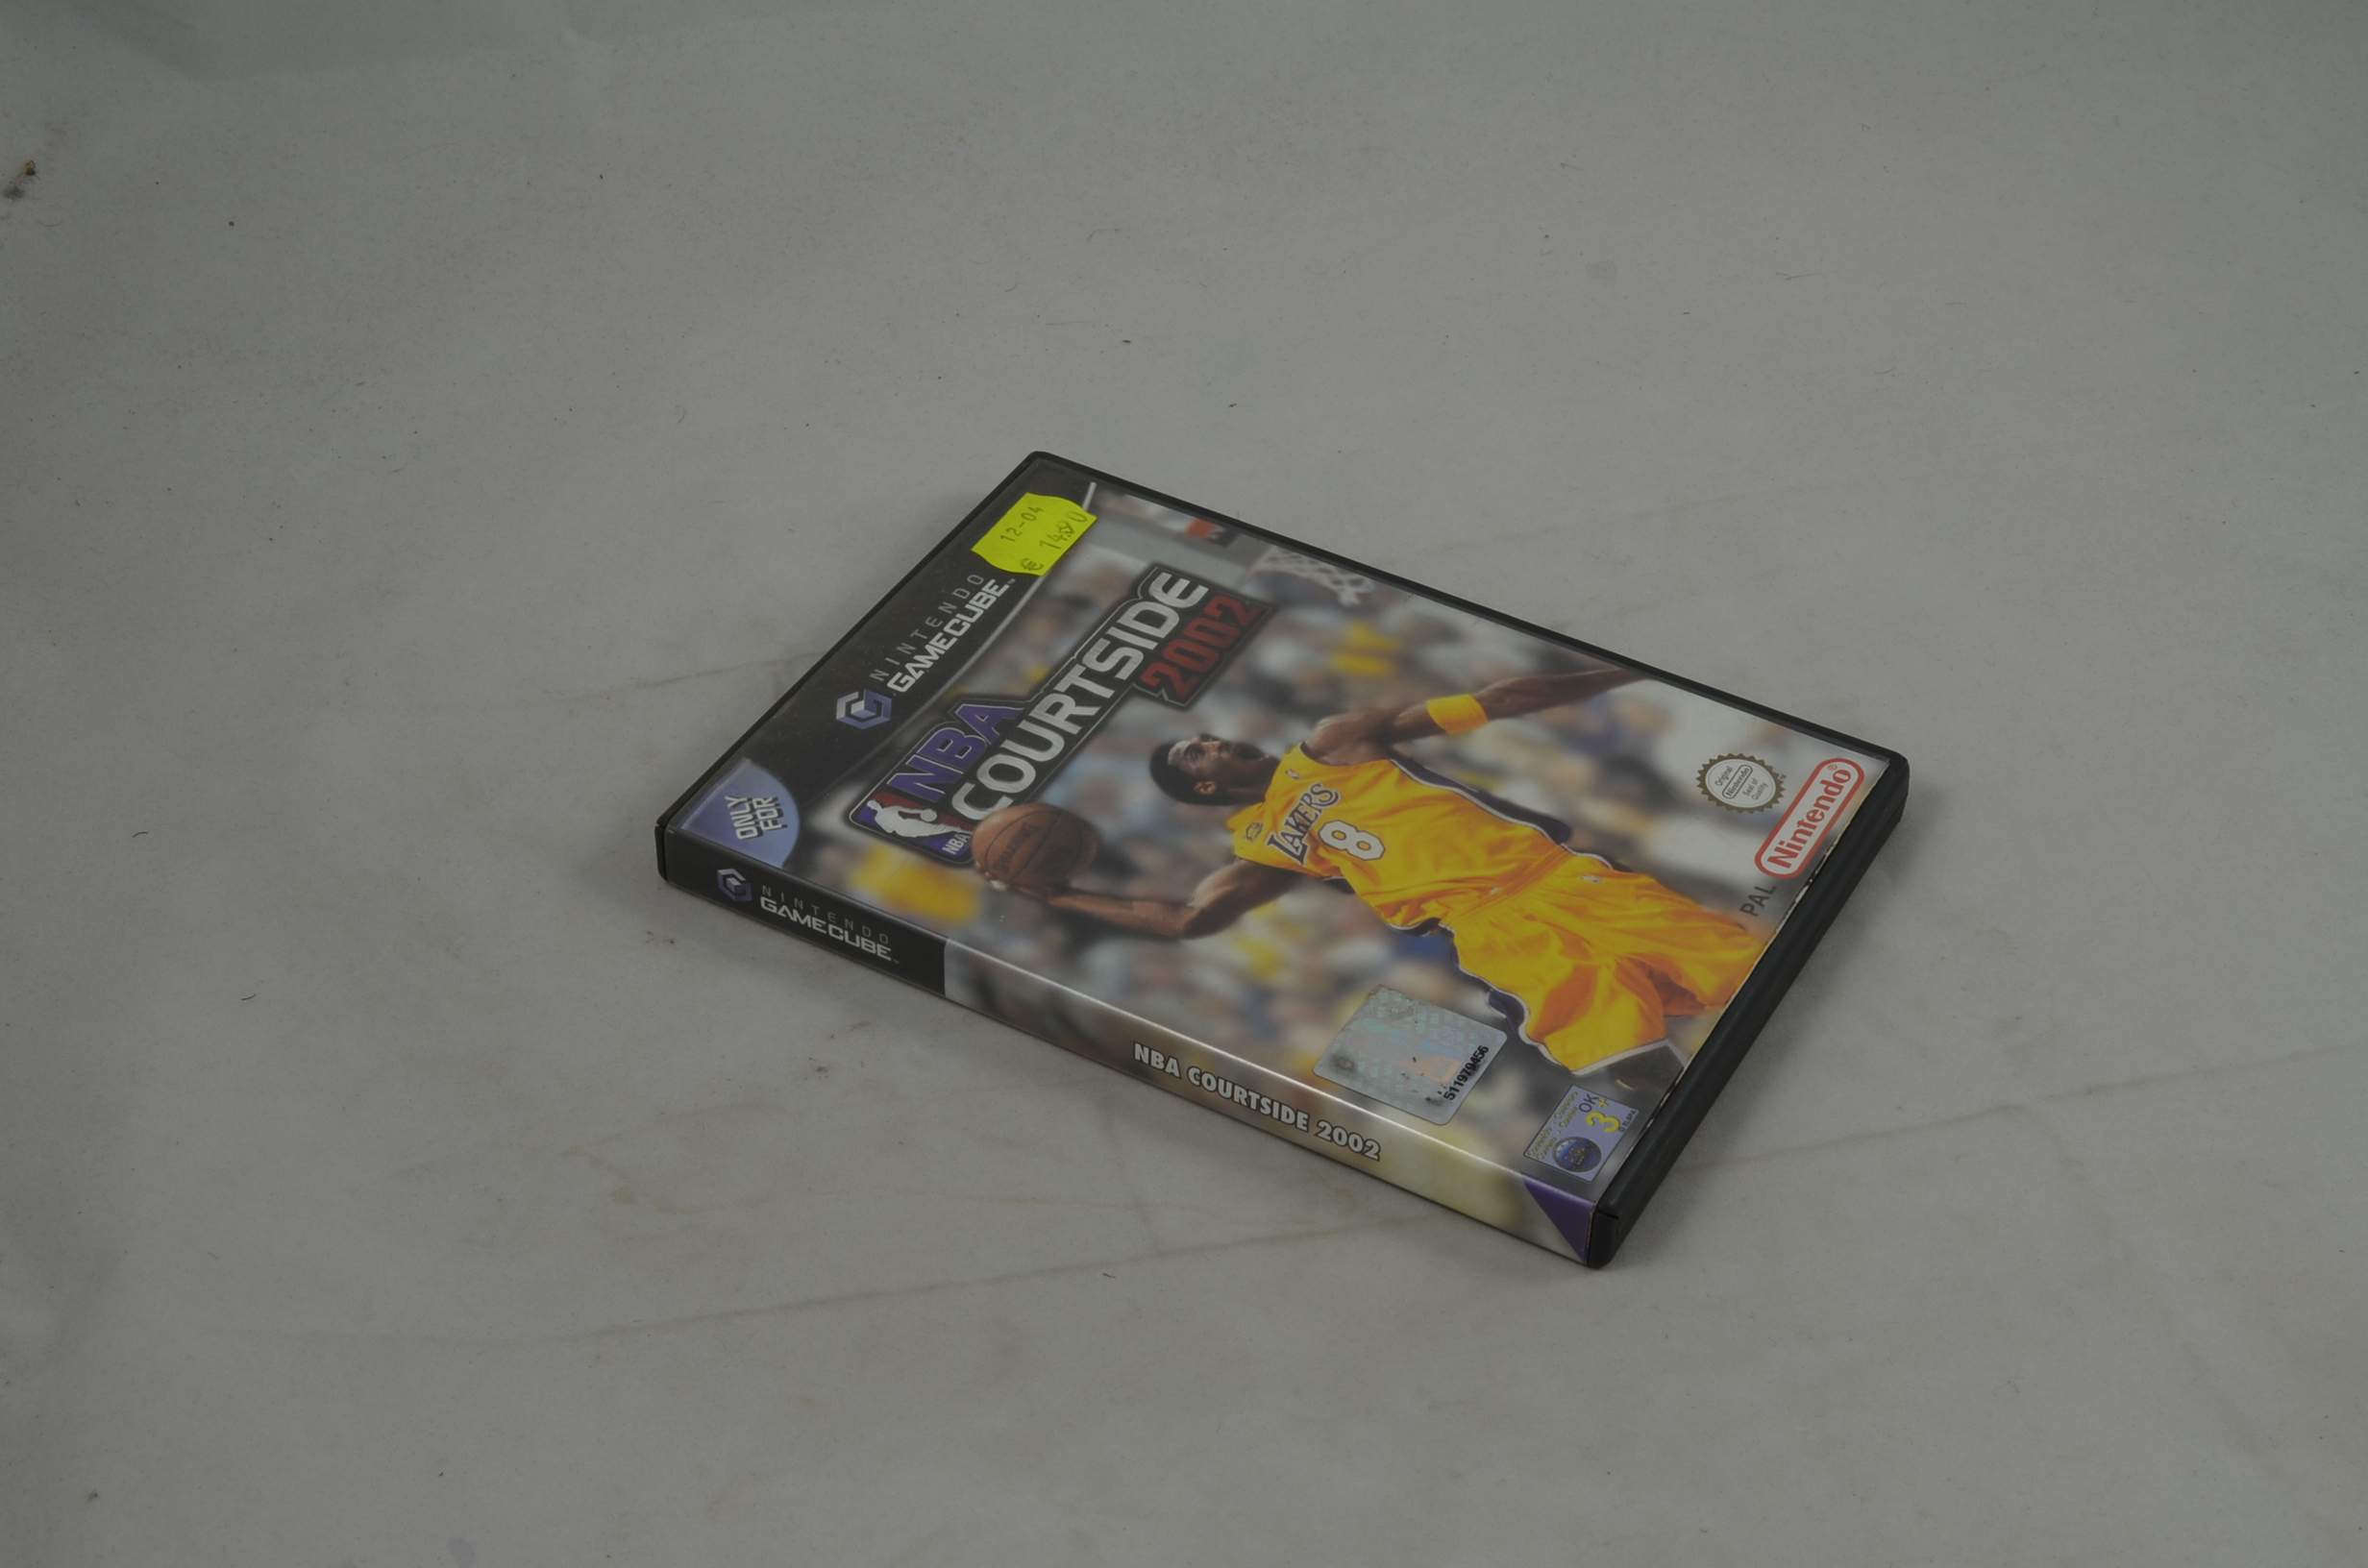 Produktbild von NBA Courtside 2002 GameCube Spiel CIB (sehr gut)